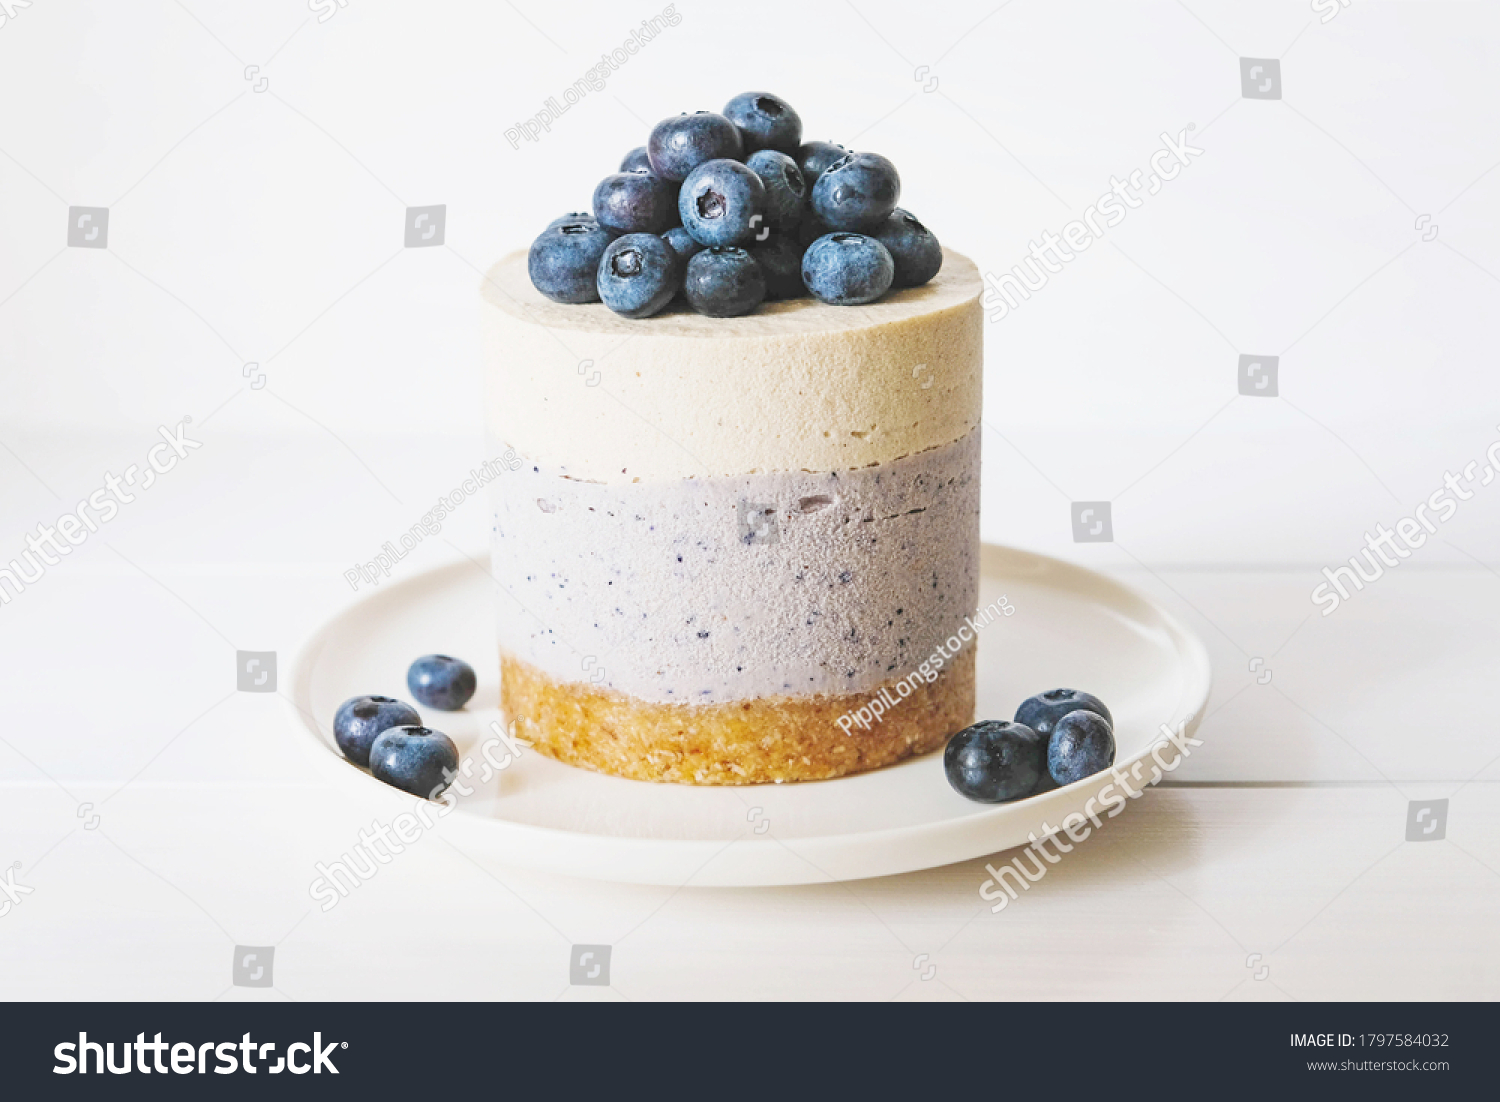 Raw gluten-free no-bake dessert. Vegan vanilla blueberry cheesecake against white background. Sweet healthy food. #1797584032